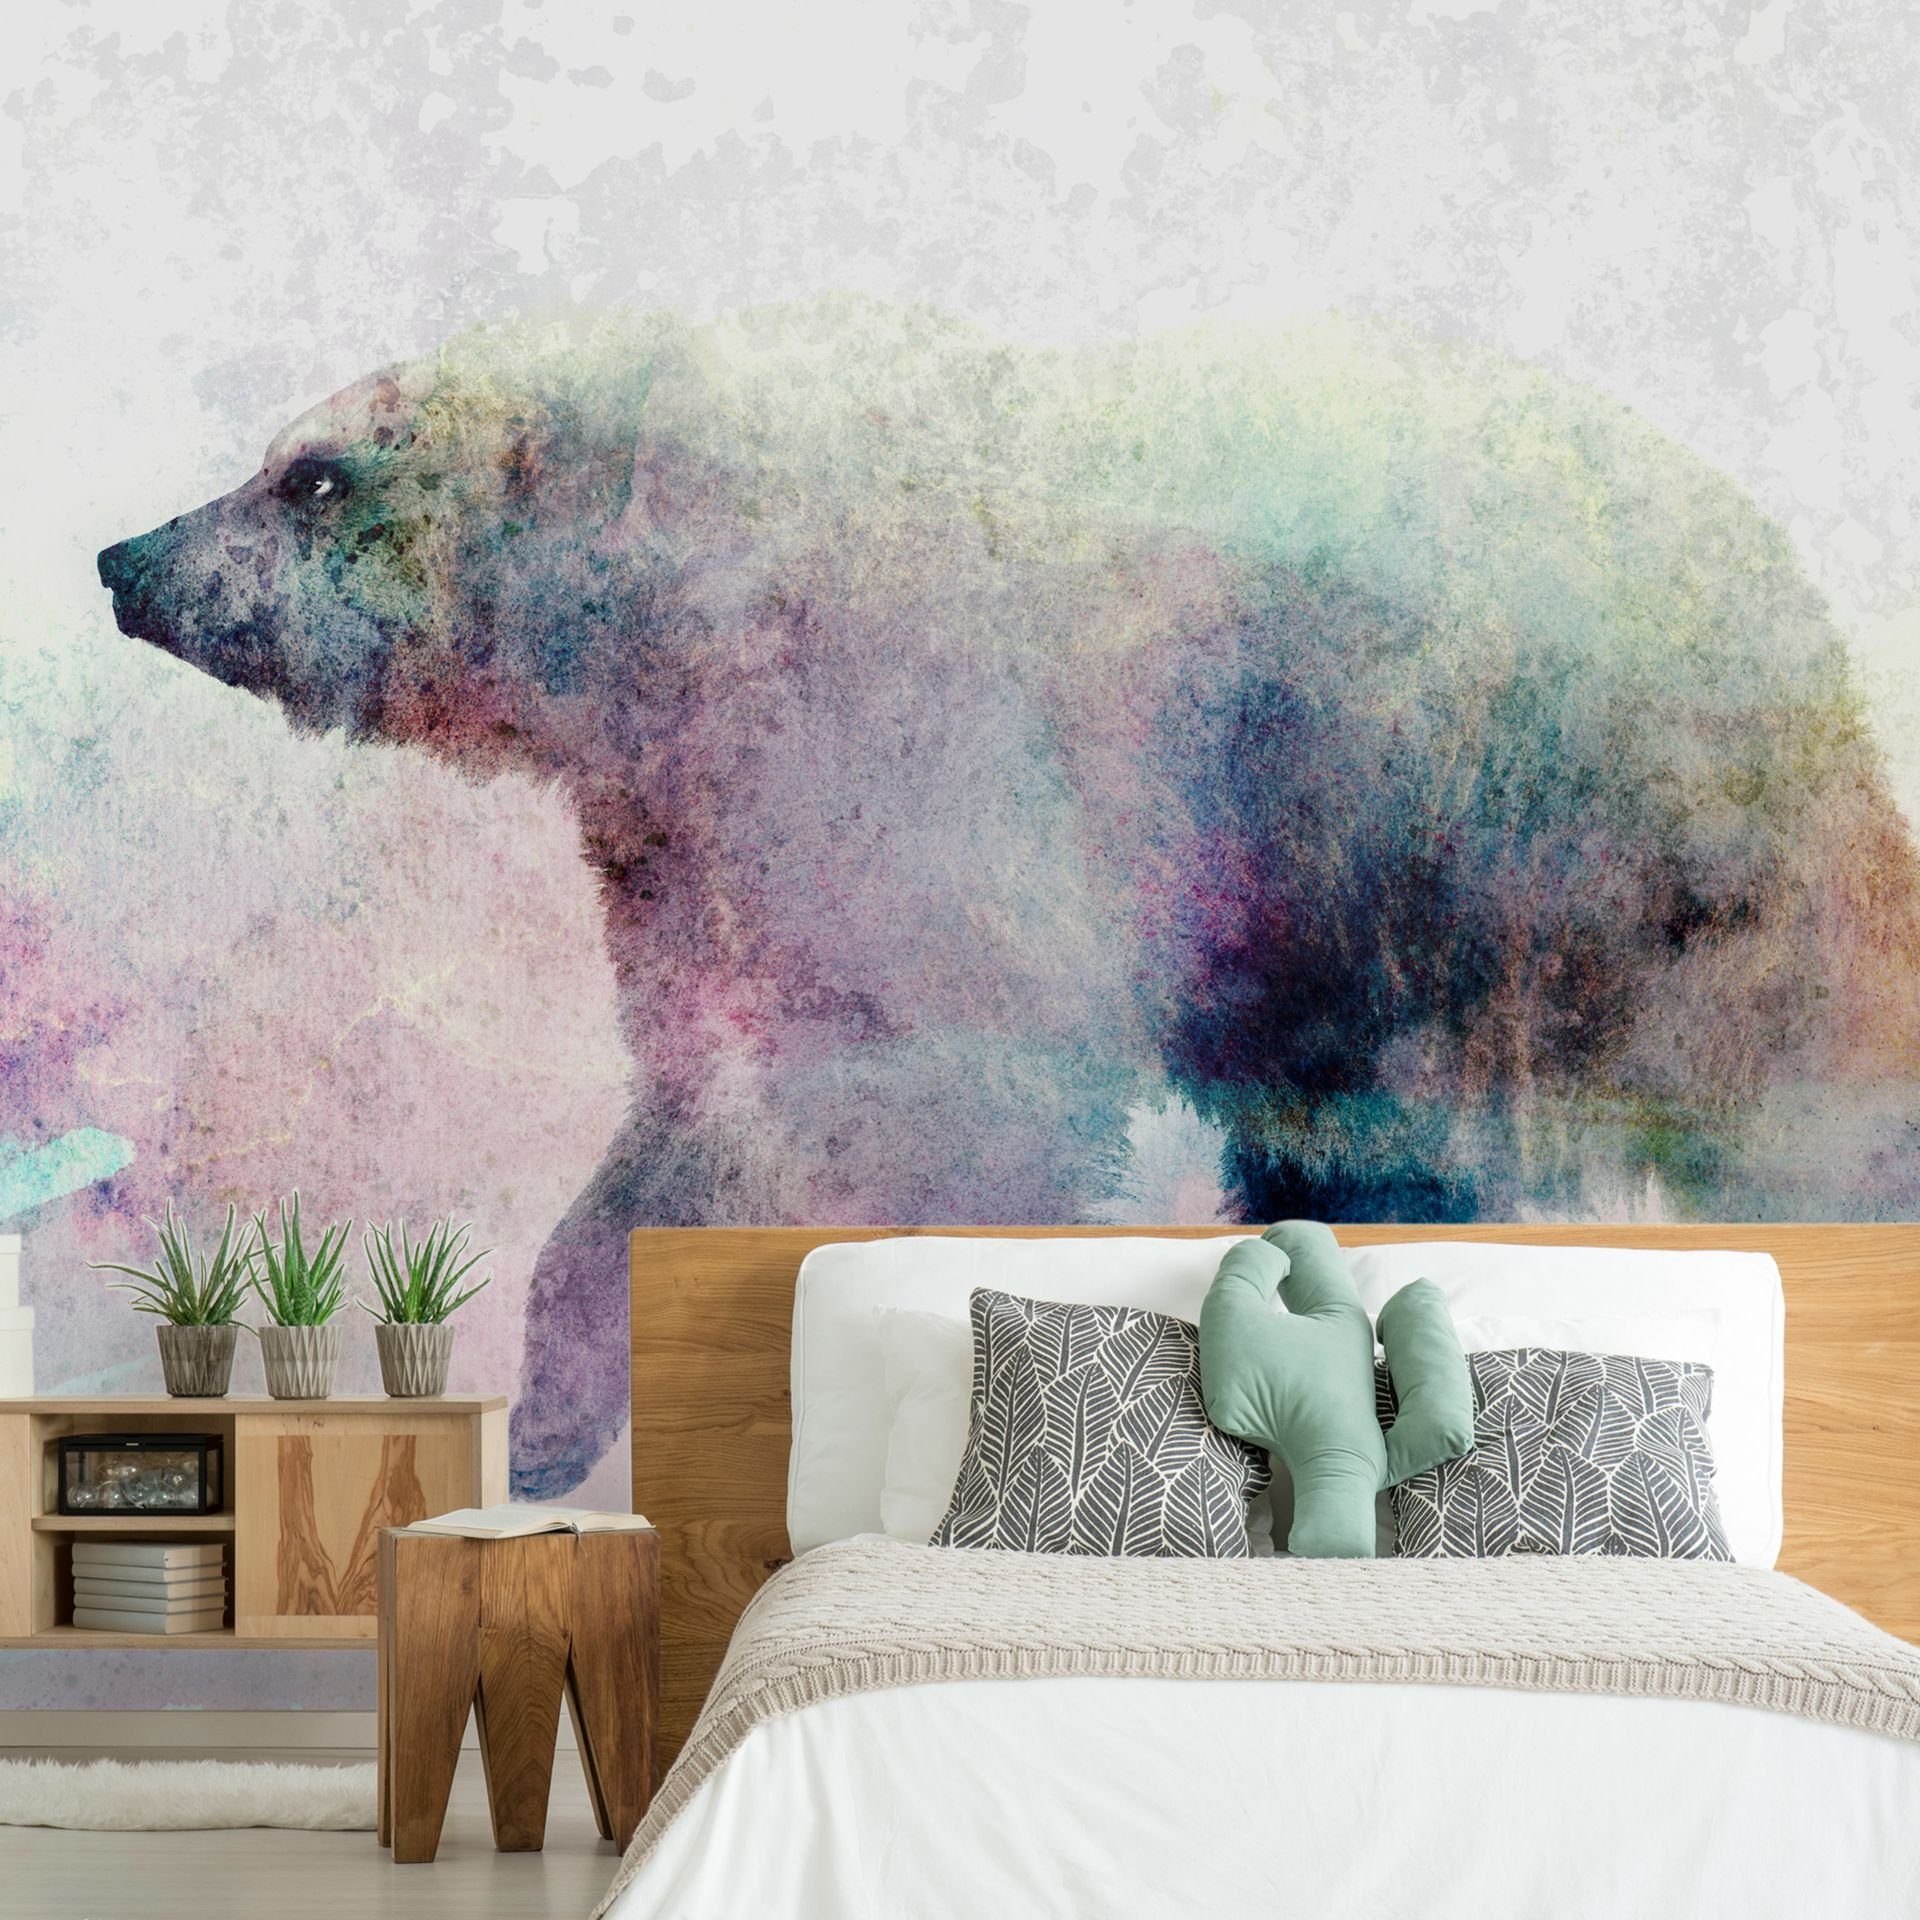 KUNSTLOFT Vliestapete Lonely Bear 0.98x0.7 m, matt, lichtbeständige Design Tapete